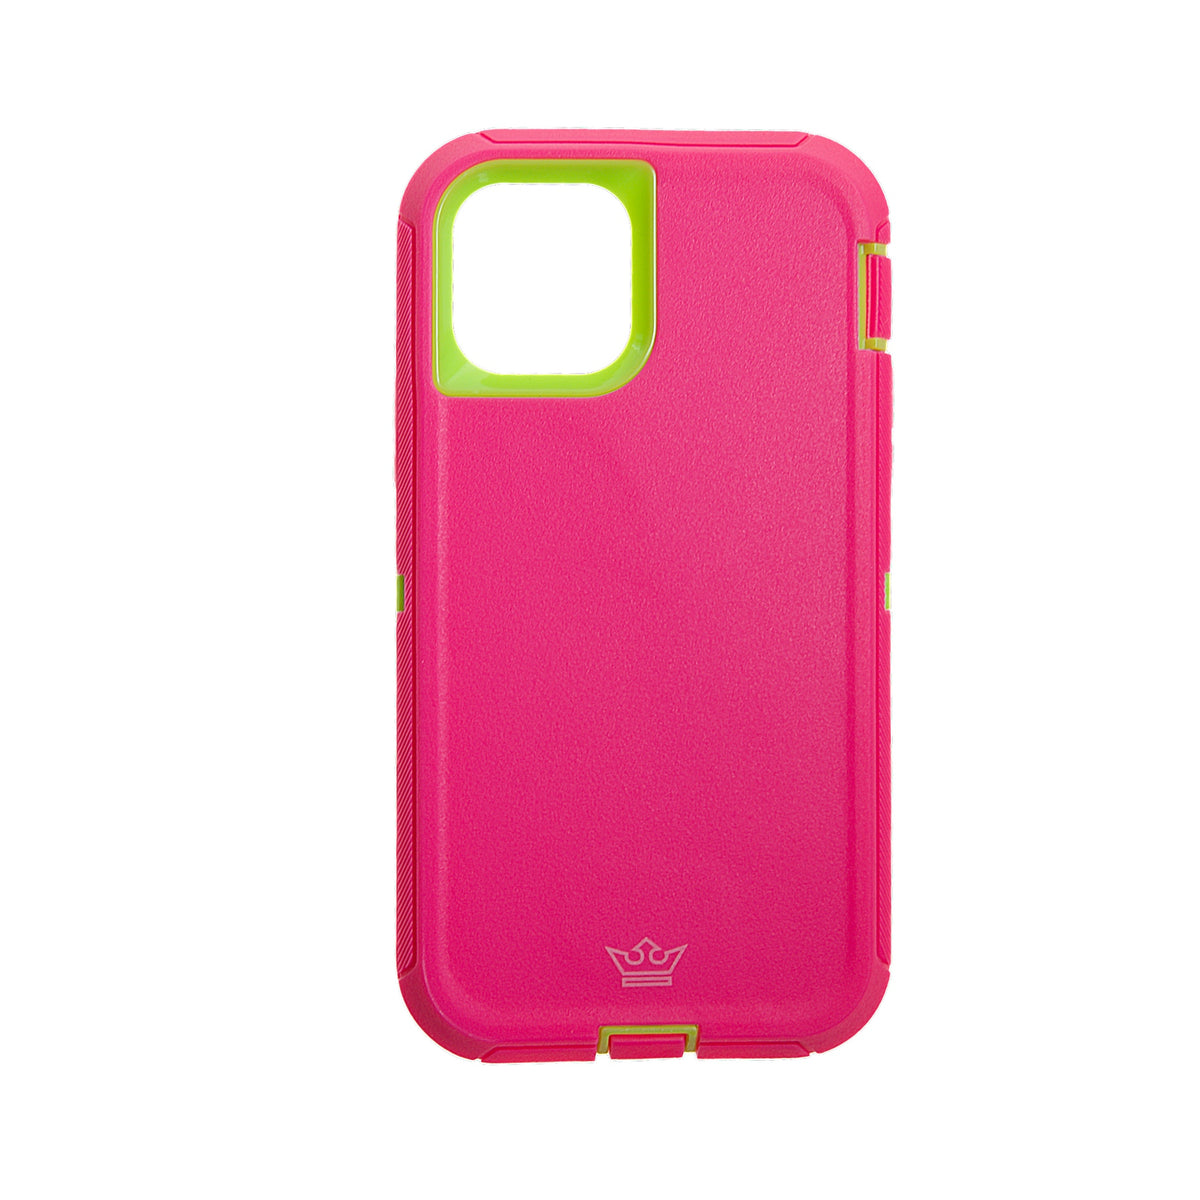 estuches proteccion el rey defender apple iphone 11 pro max color rosado / verde